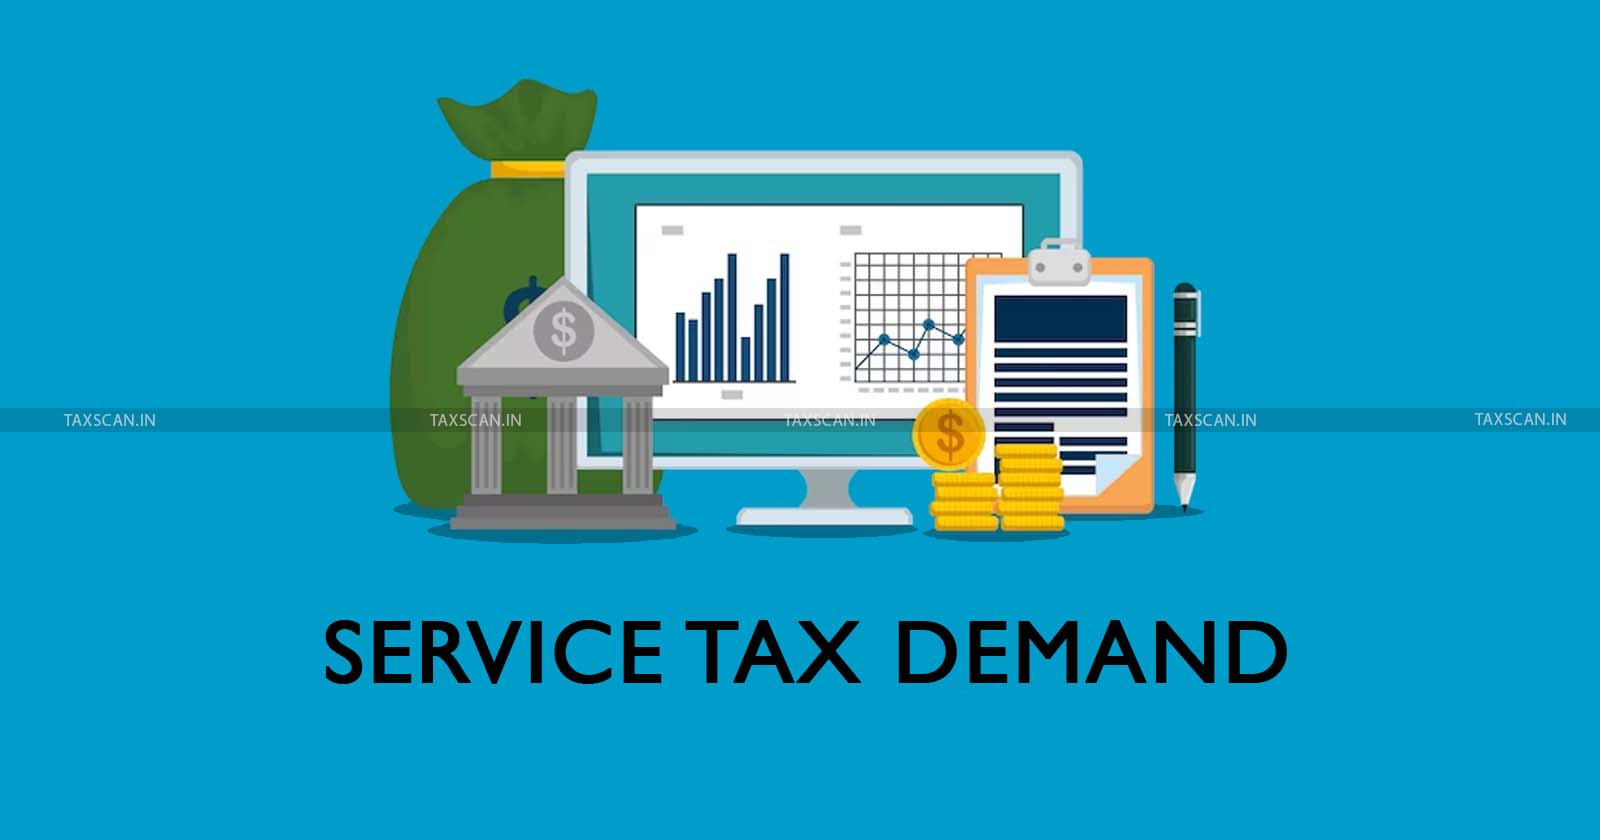 Demand of Service Tax - Service Tax - Manpower Recruitment - Manpower Recruitment and Supply Agency Service and Security Service - Supply Agency Service - taxscan